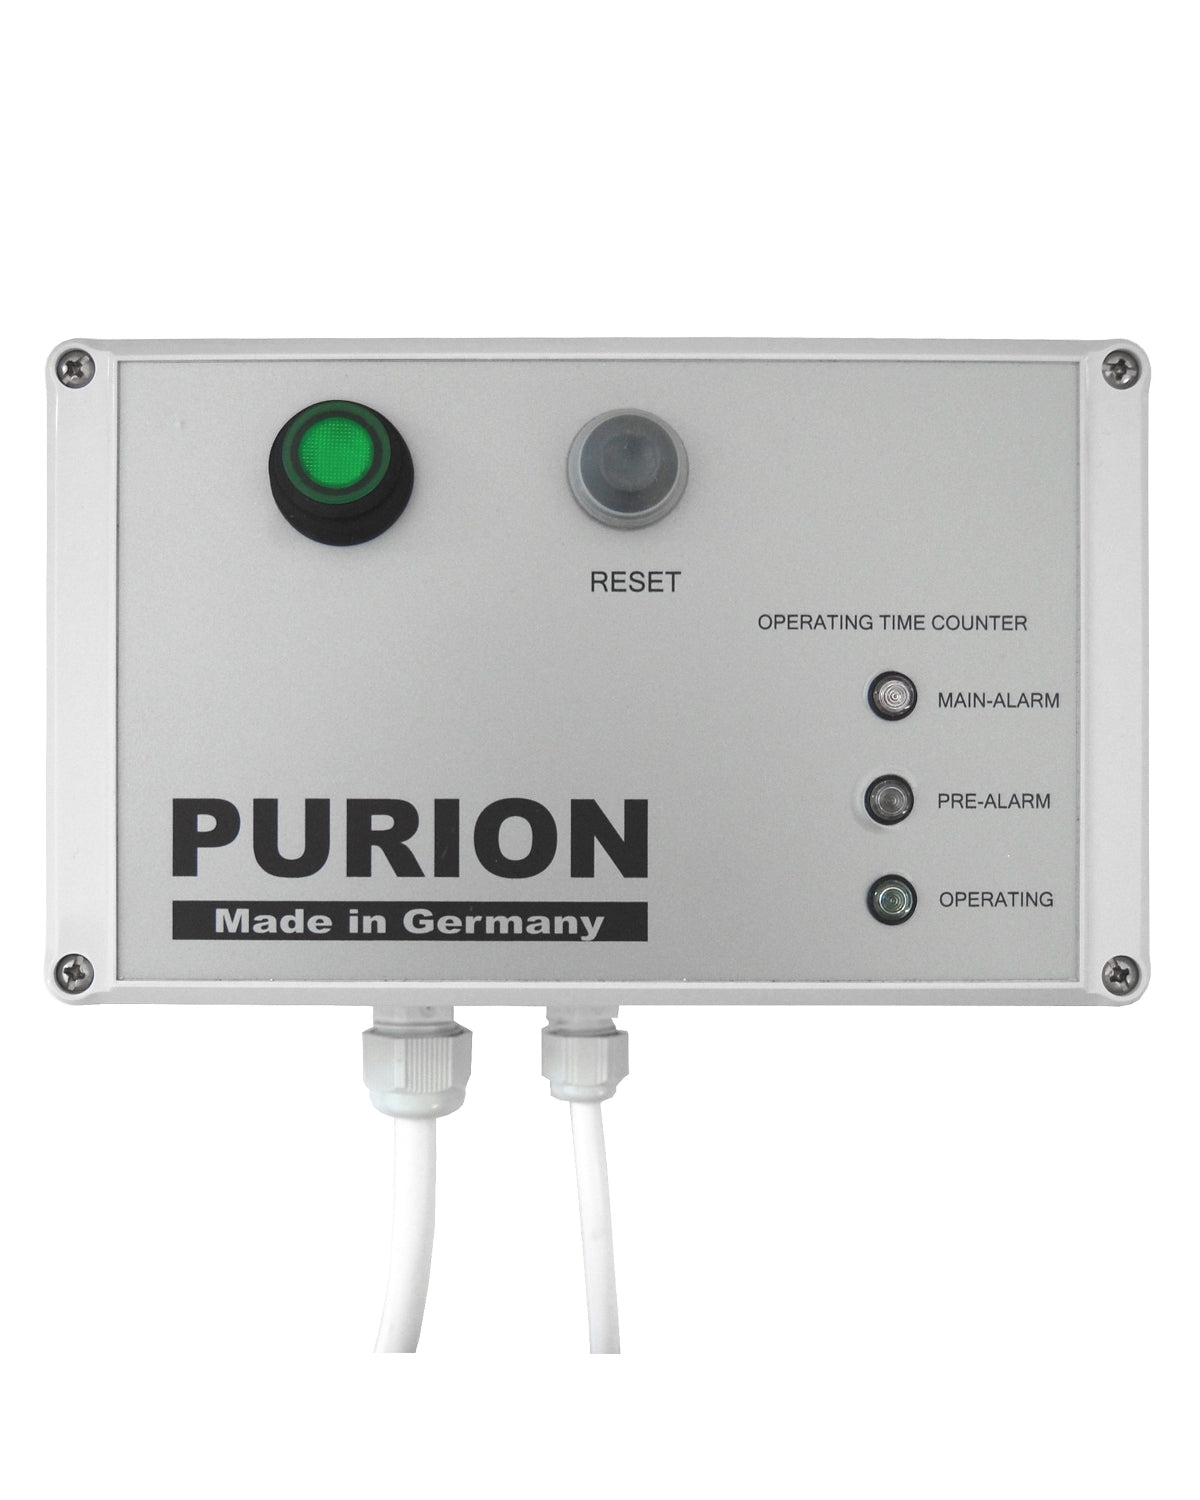 Energieverbrauchsoptimierter AIRPURION 300 active Plus Ionisator zur effizienten Luftentkeimung und Desinfektionsleistung. (PURION GmbH)